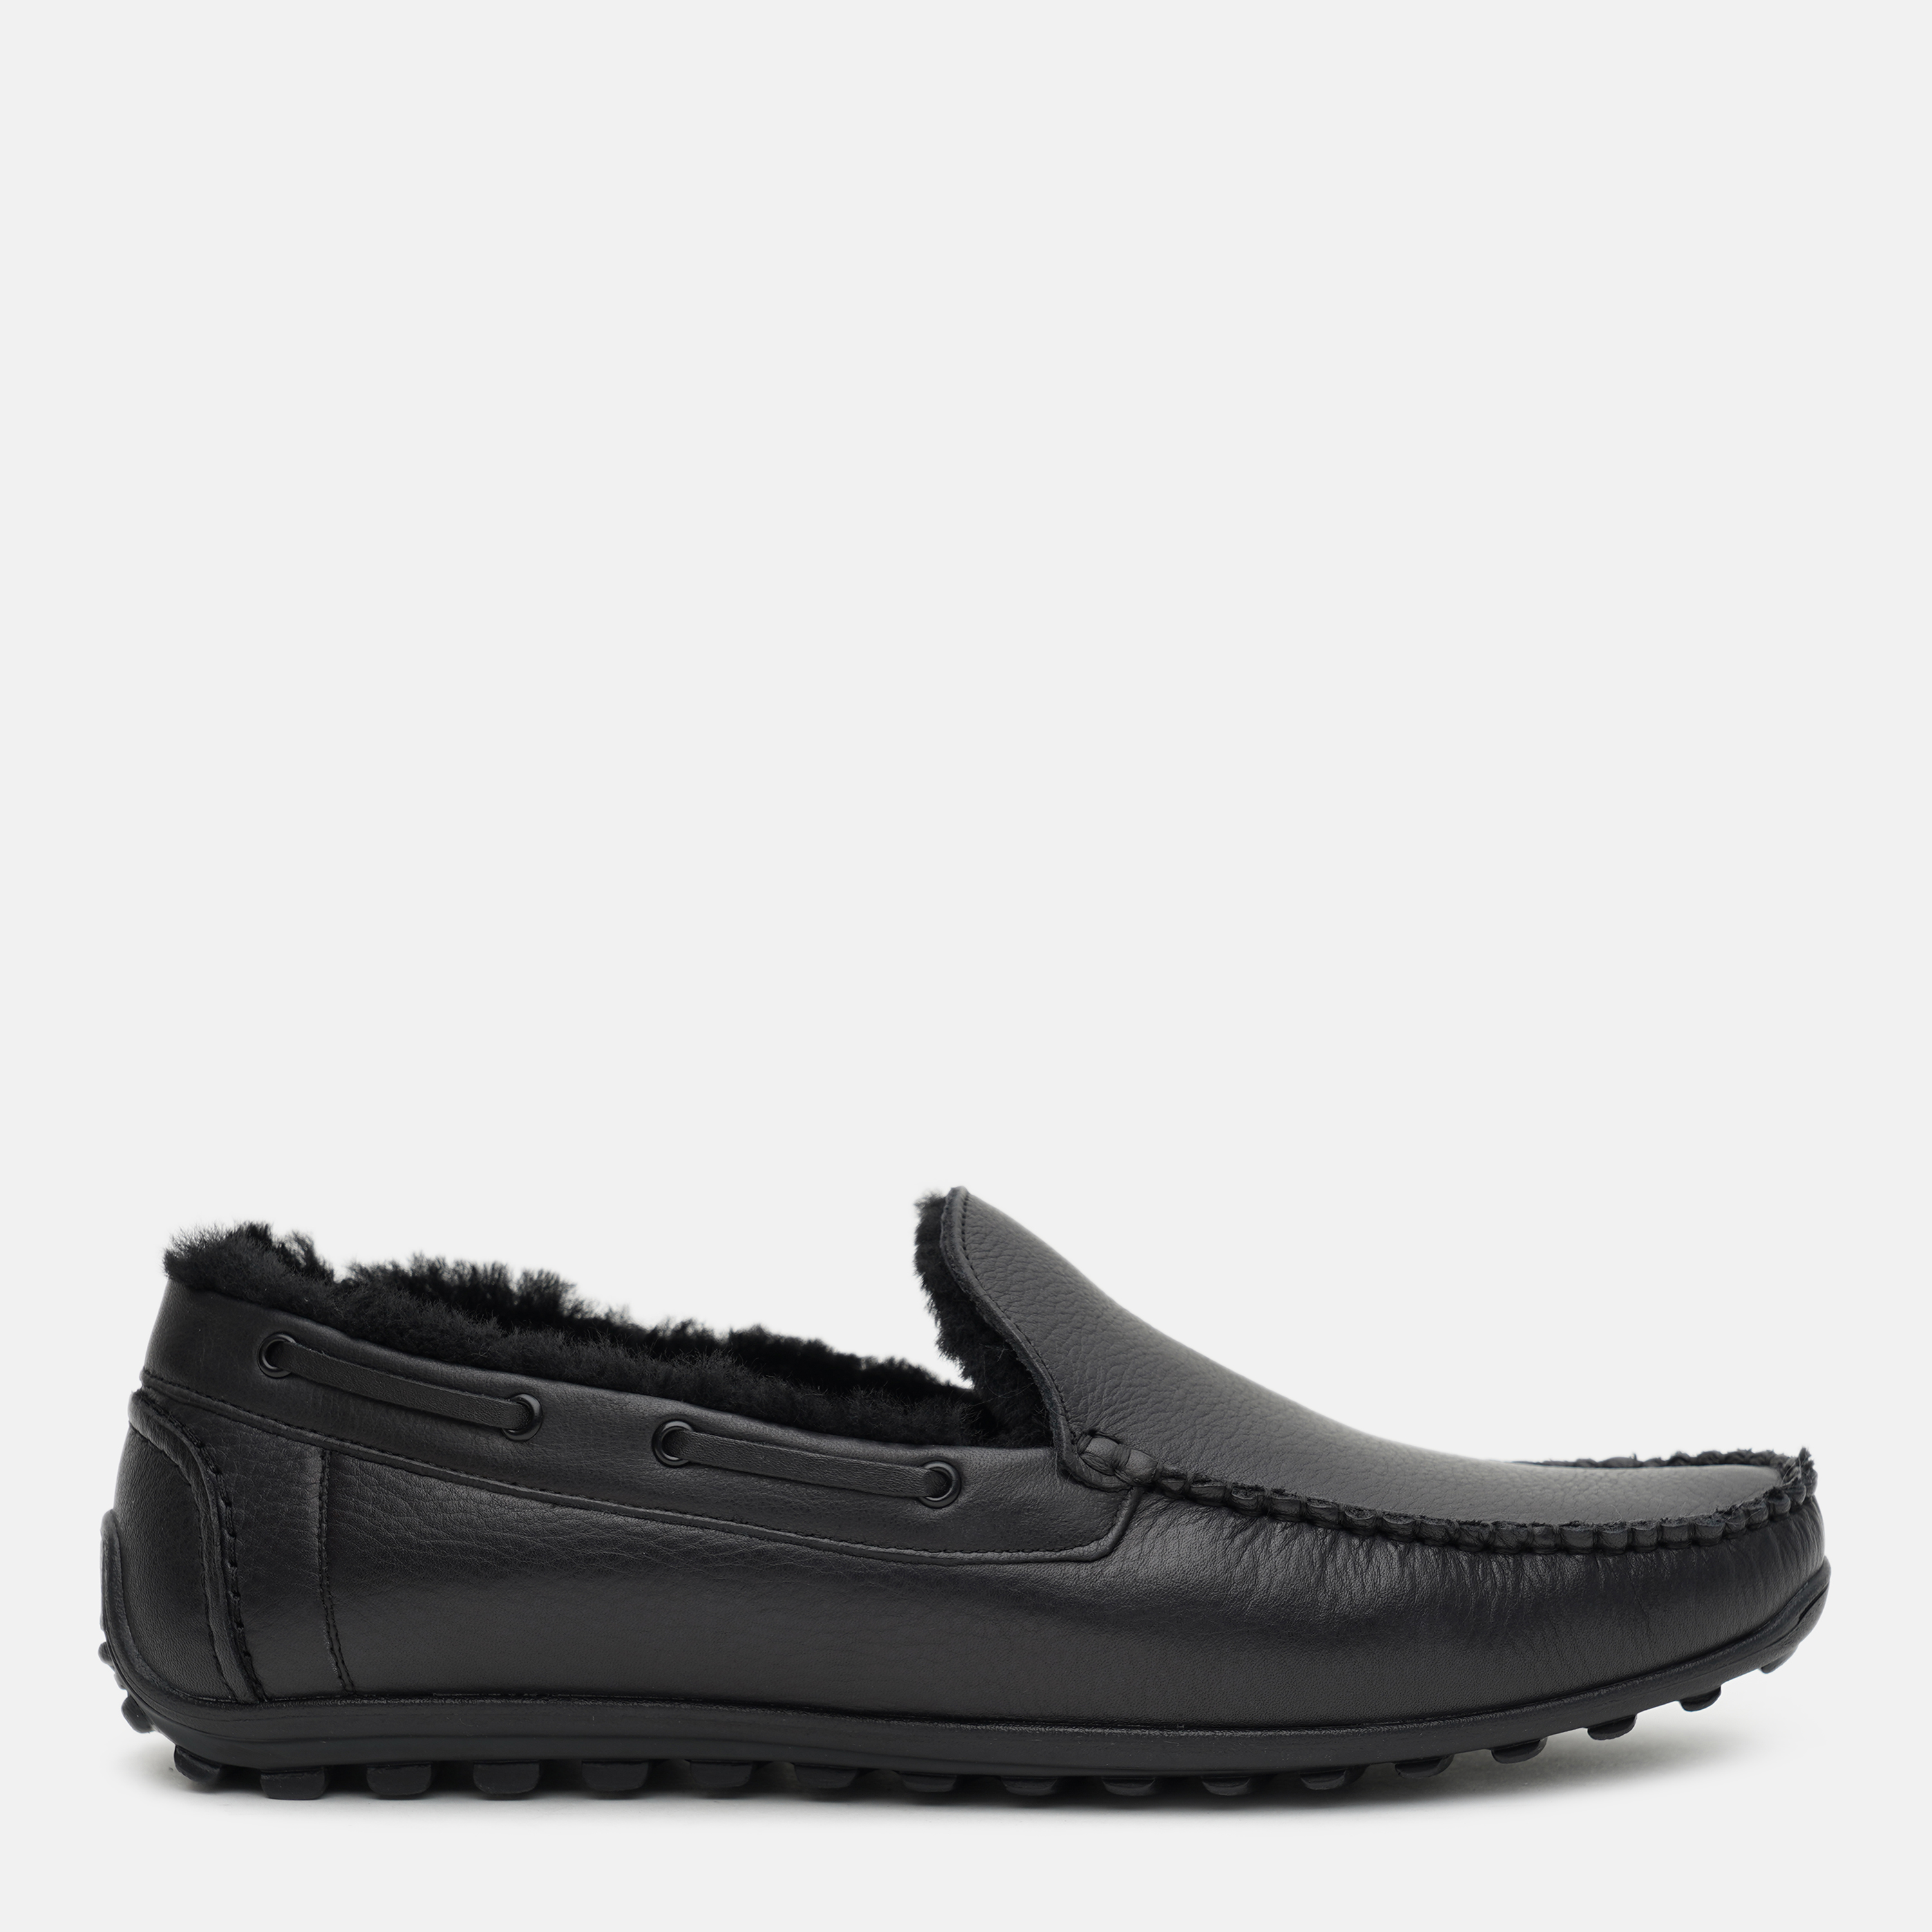 Акция на Мокасины Prime Shoes 041 Black Leather 16-041-30120 44 29 см Черные (PS_2000000163765) от Rozetka UA